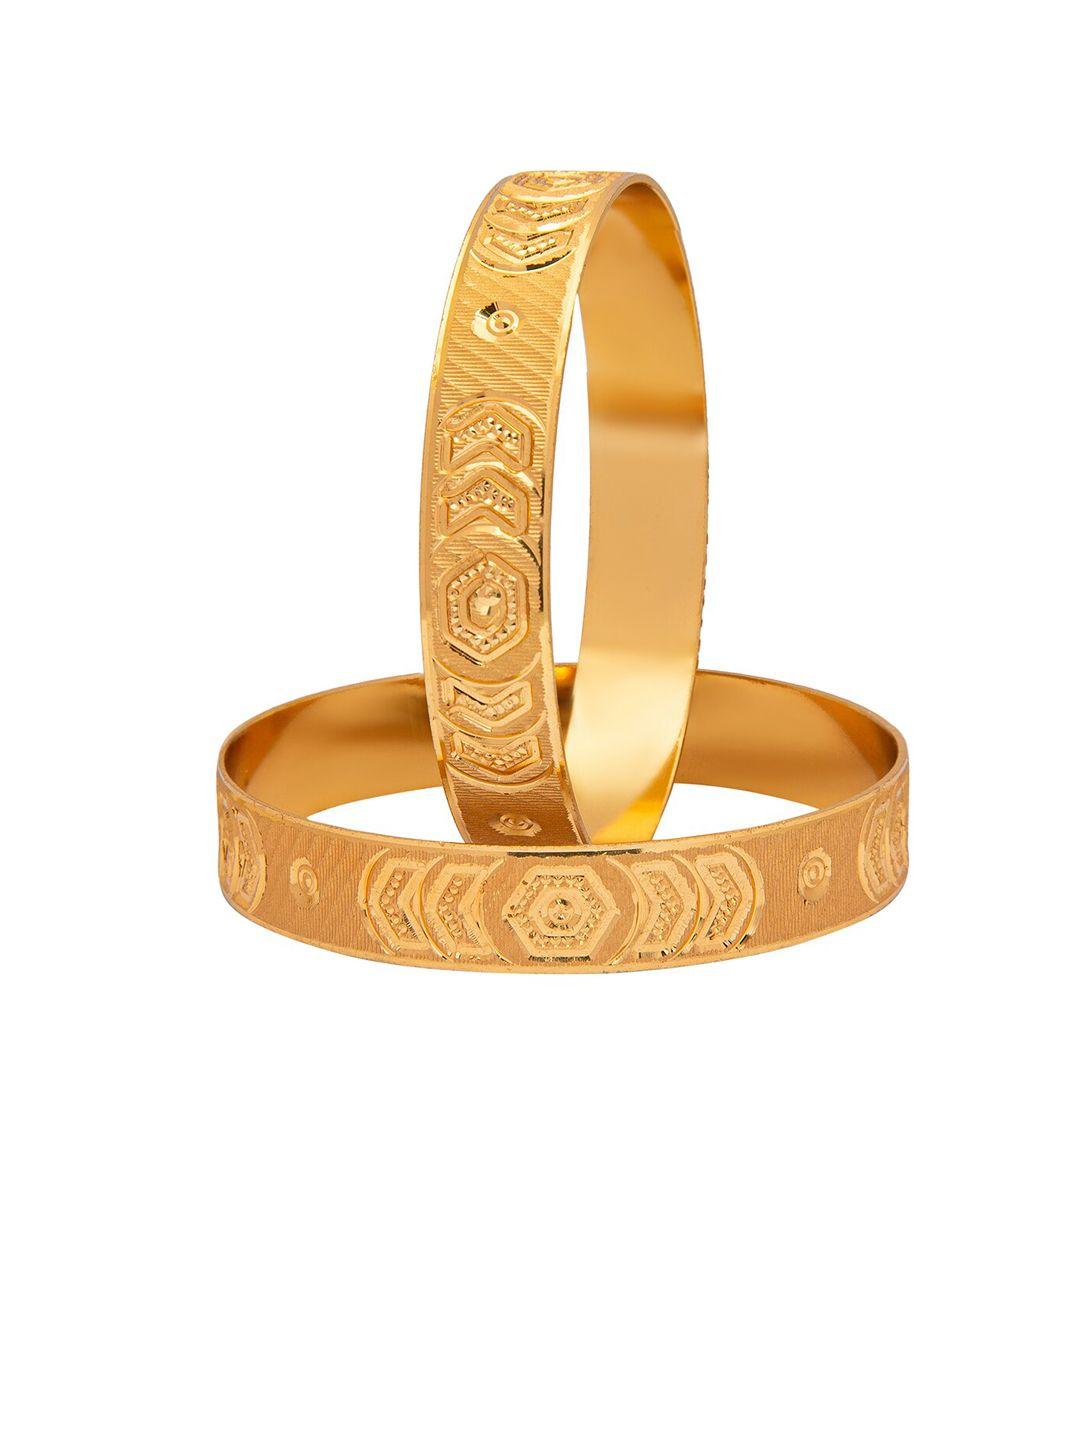 shining-jewel---by-shivansh-set-of-2-gold-plated-bangle